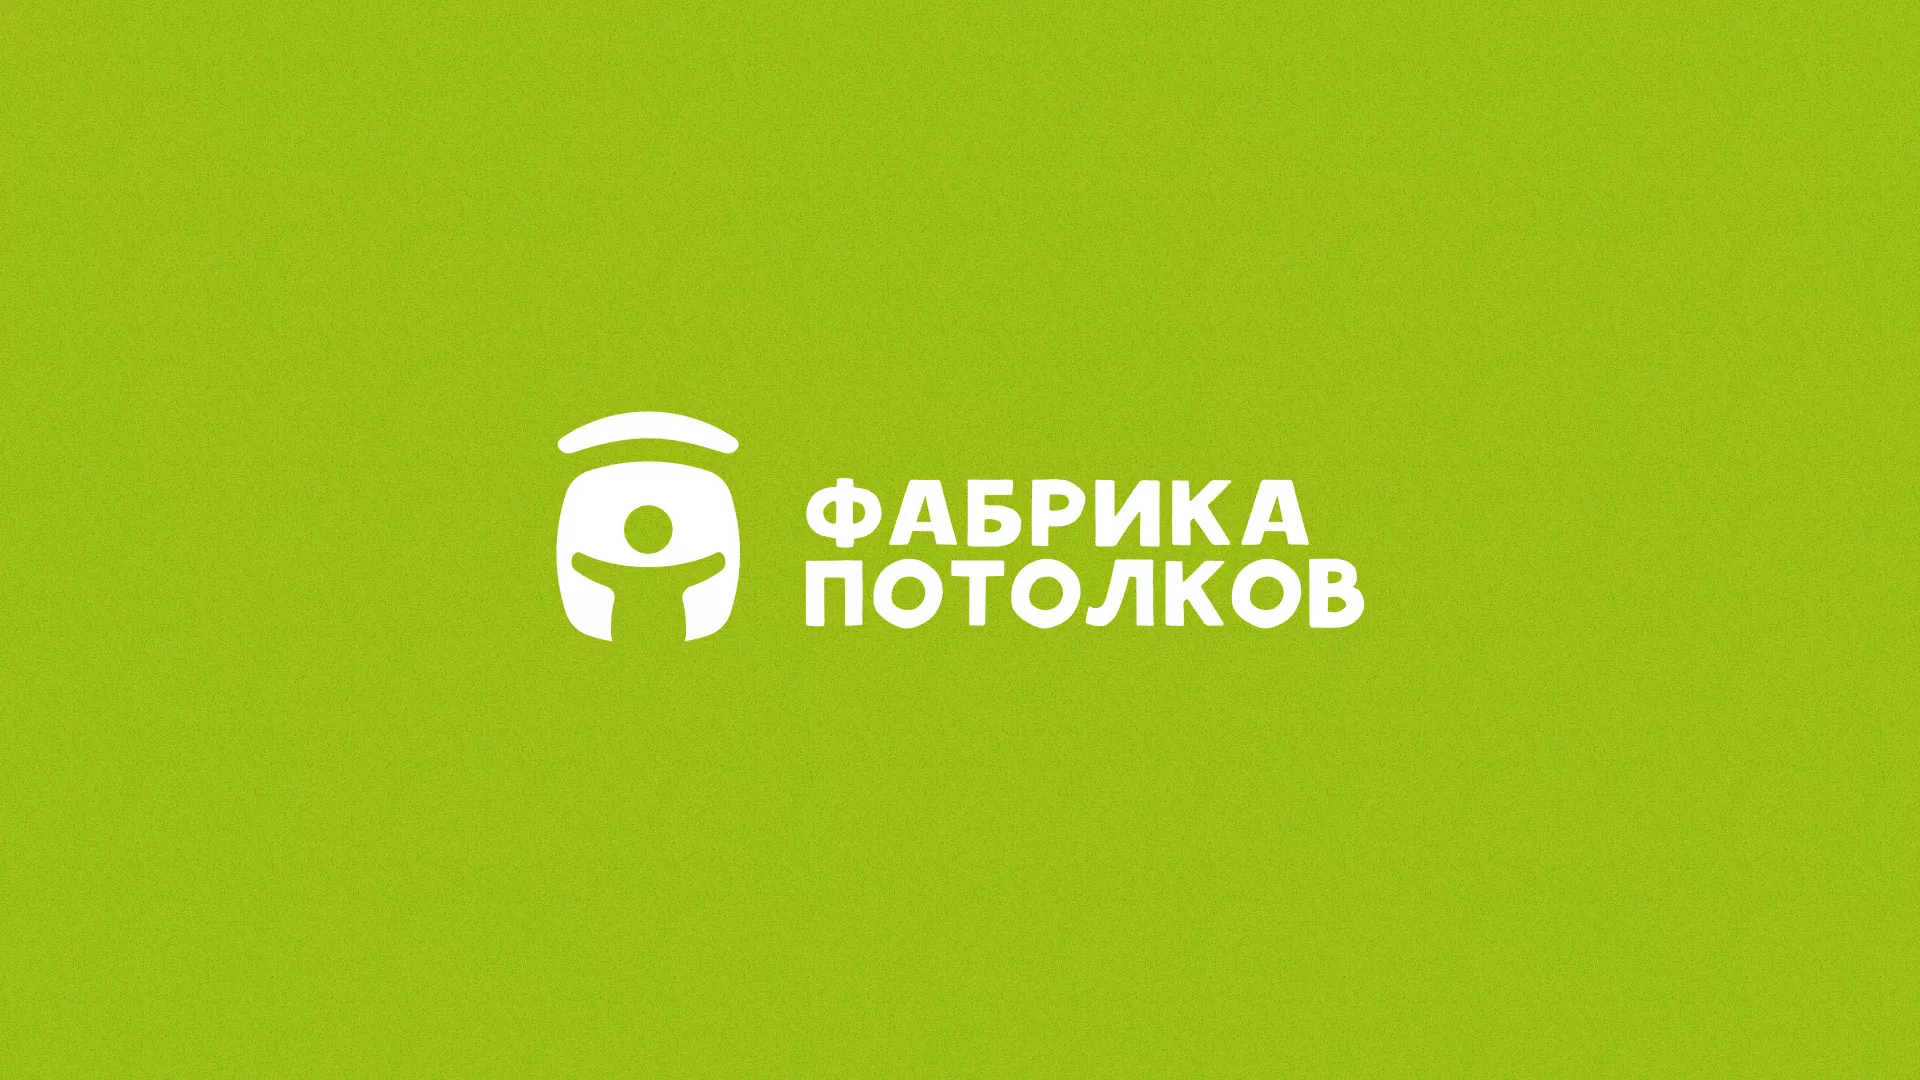 Разработка логотипа для производства натяжных потолков в Сафоново